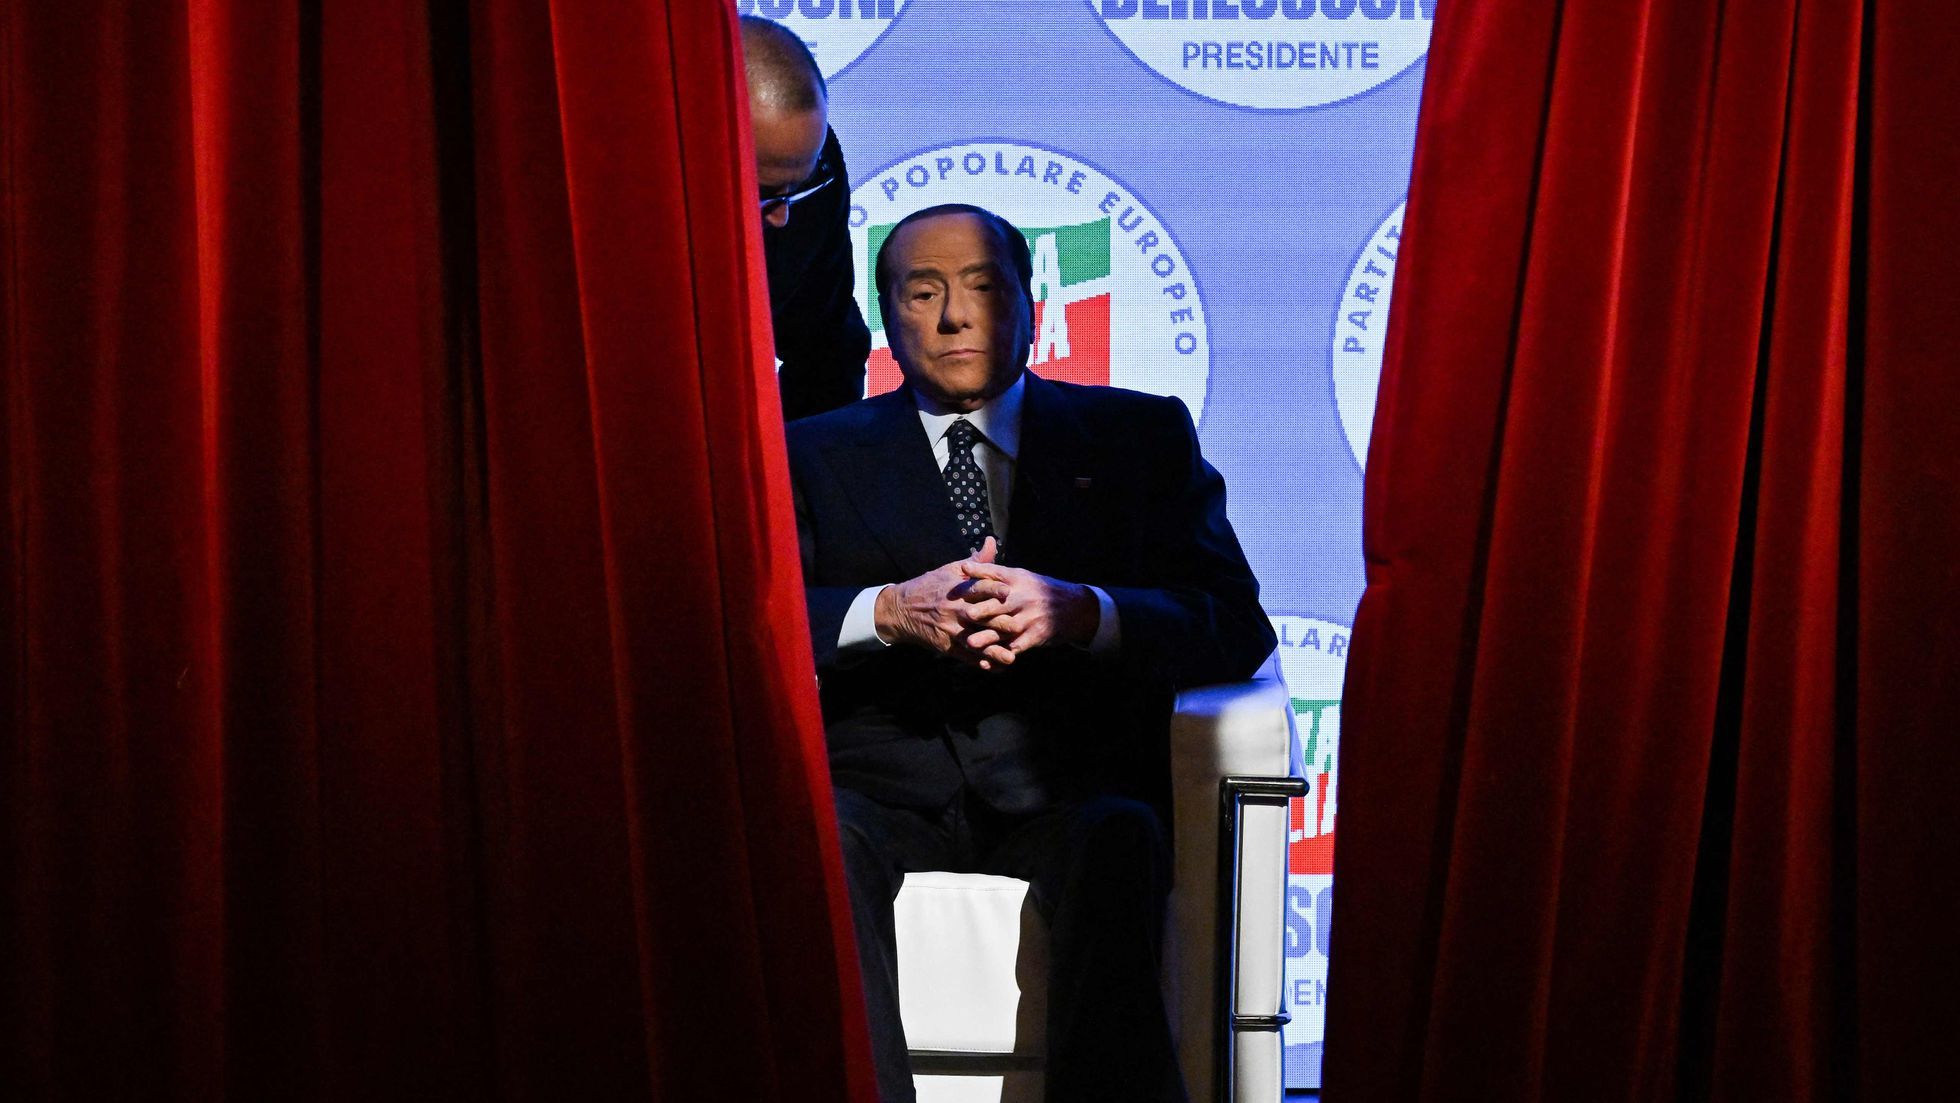 Зашквар в преддверии выборов в прямом эфире итальянского RAI 1 - 24 Канал